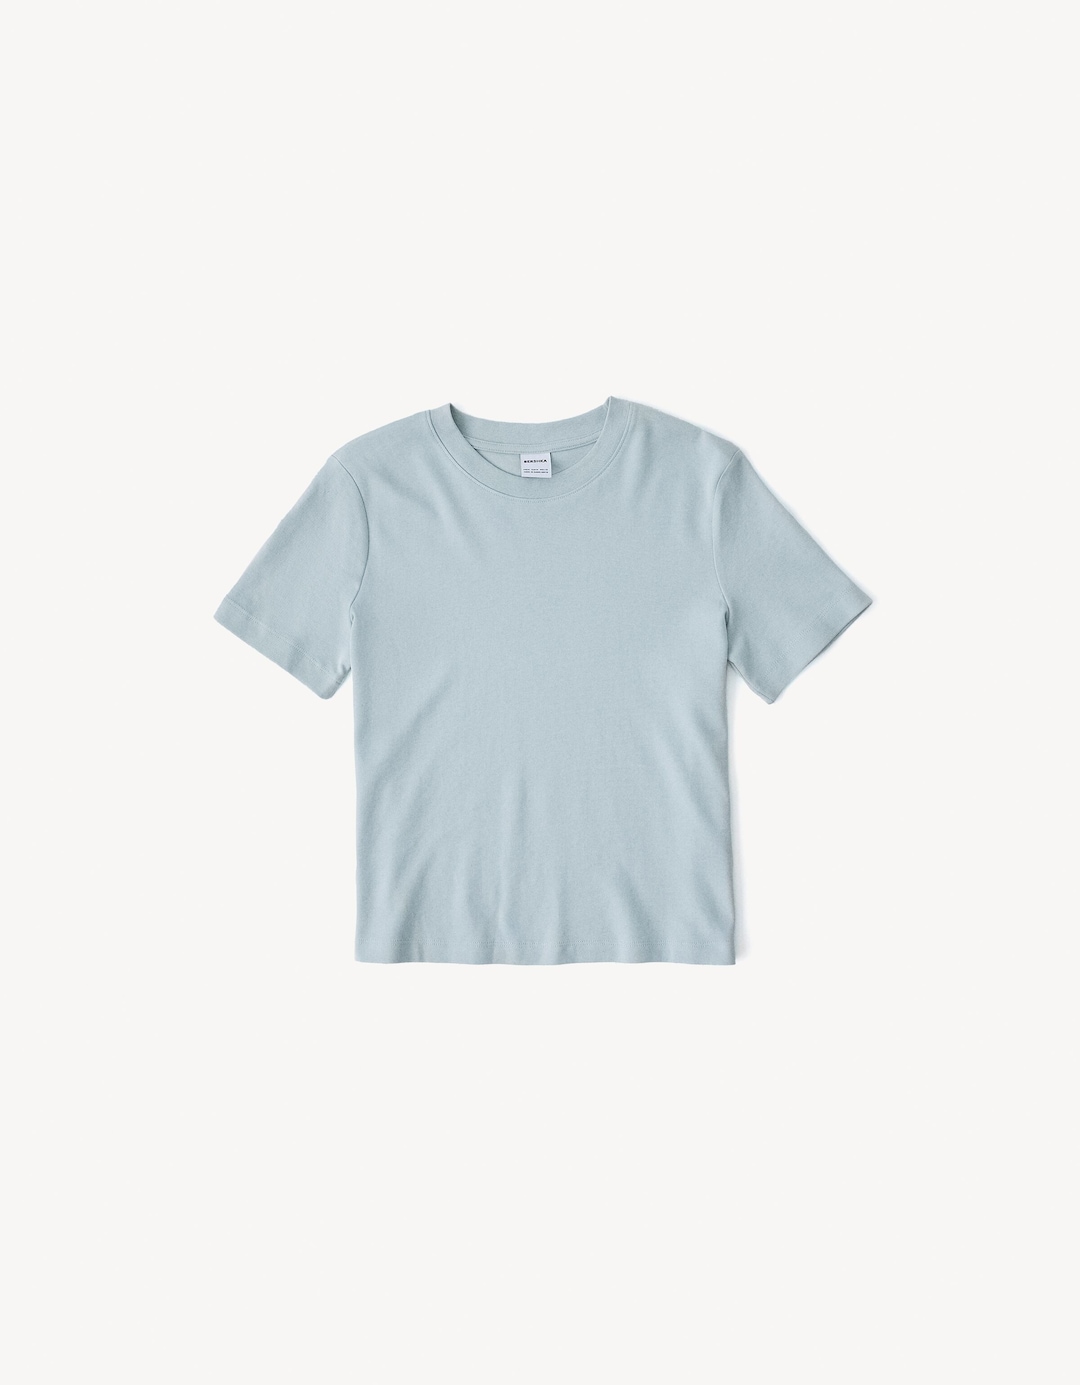 Regular fit short sleeve T-shirt